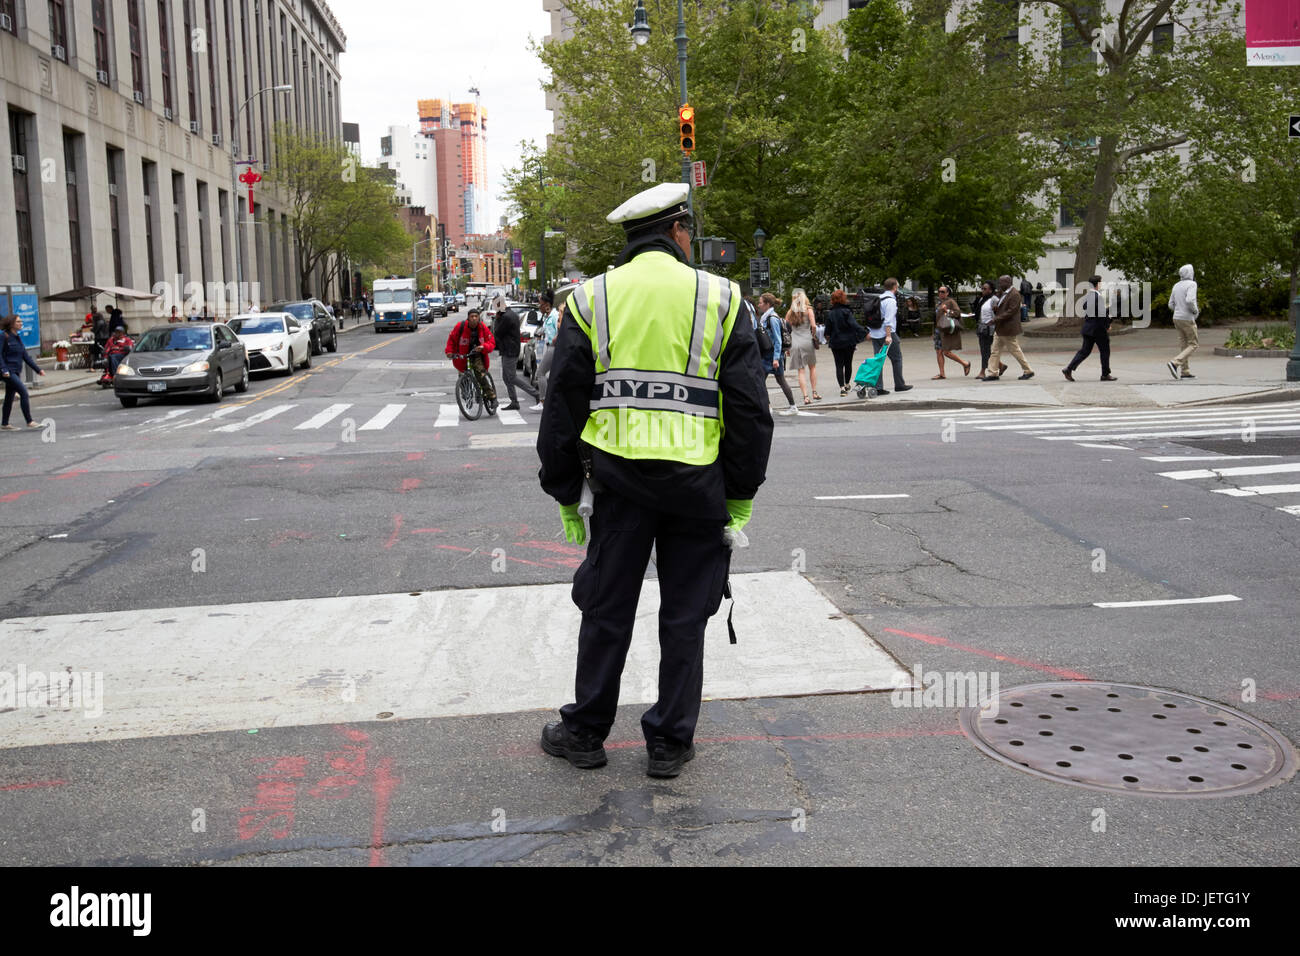 Tráfico de nypd cop en las calles de la ciudad de Nueva York EE.UU. Foto de stock